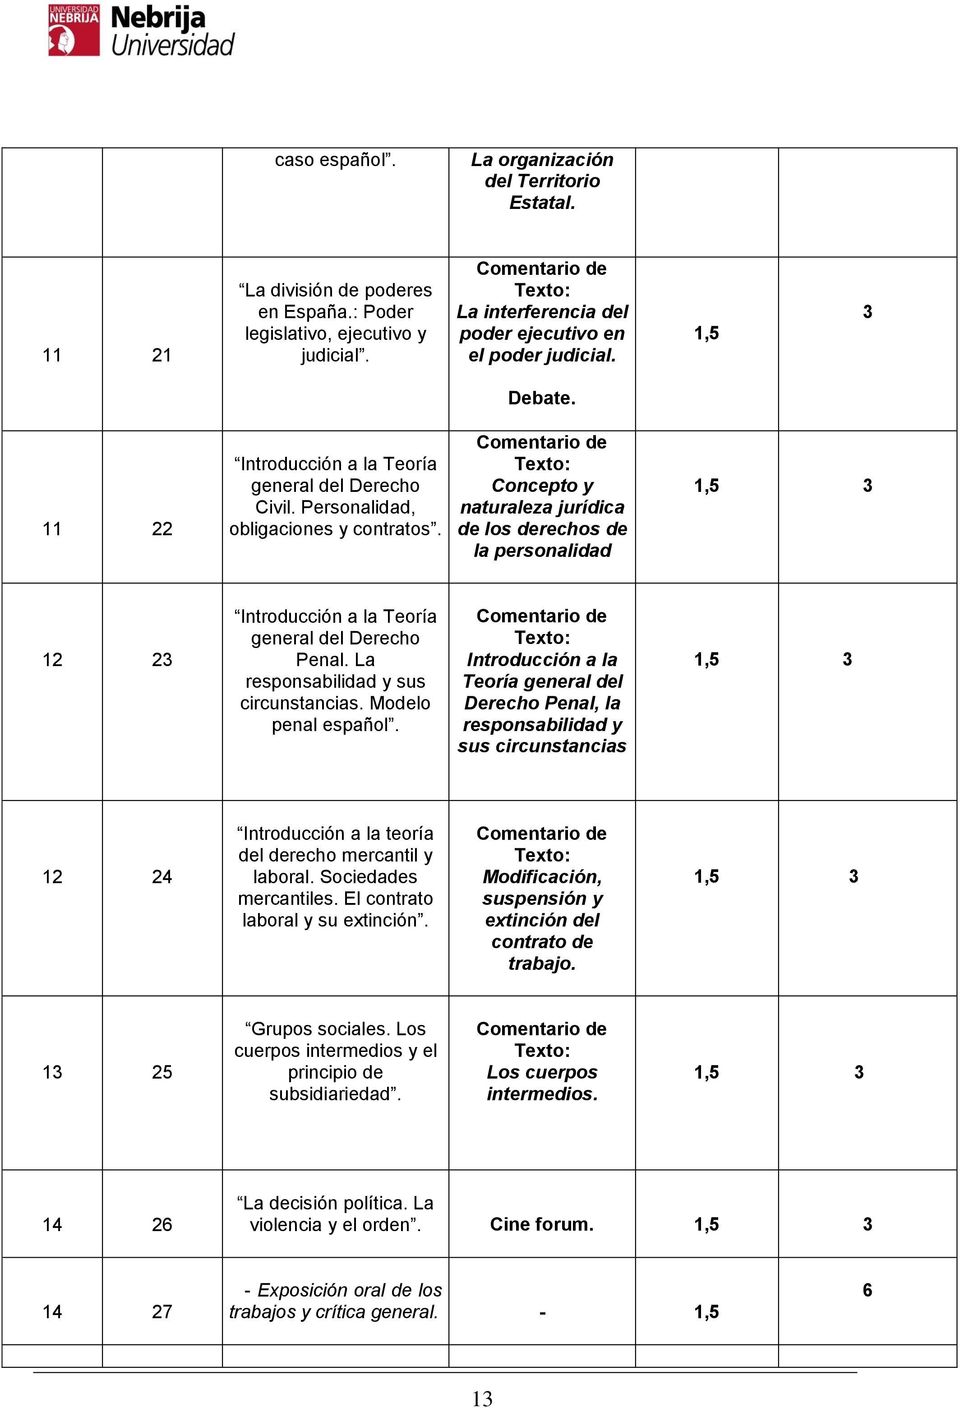 Concepto y naturaleza jurídica de los derechos de la personalidad 12 23 Introducción a la Teoría general del Derecho Penal. La responsabilidad y sus circunstancias. Modelo penal español.